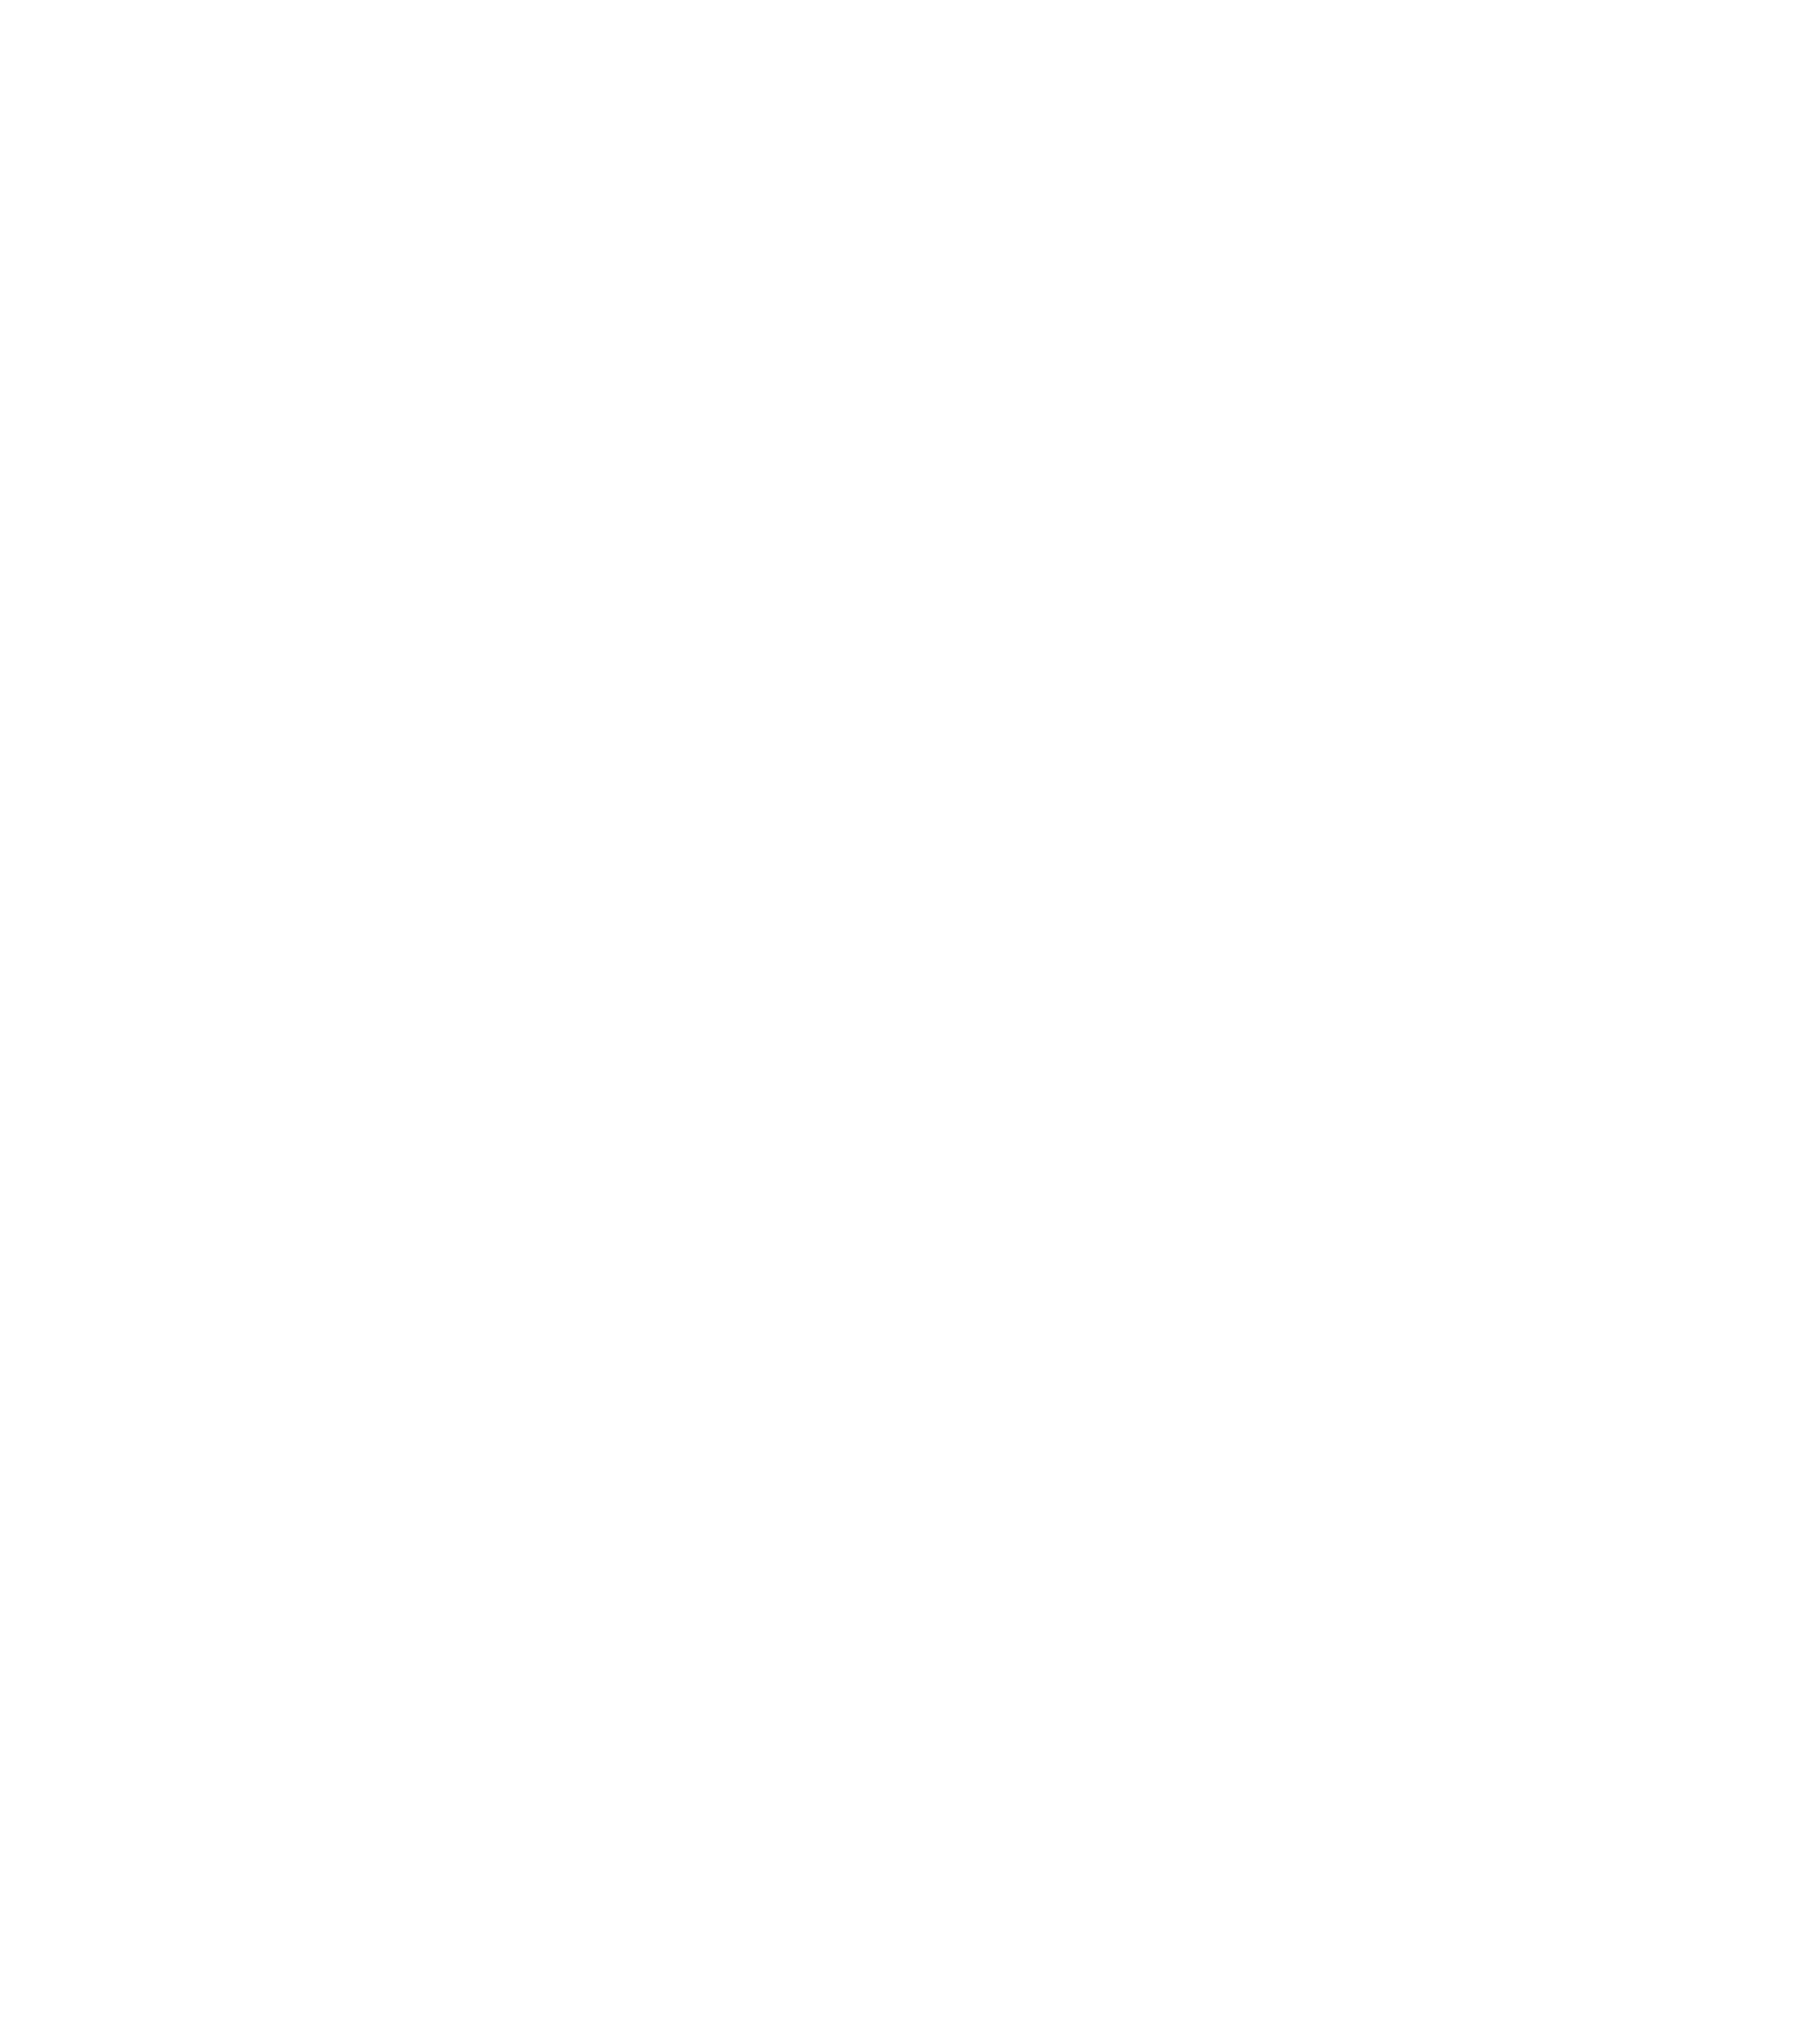 MNO Records